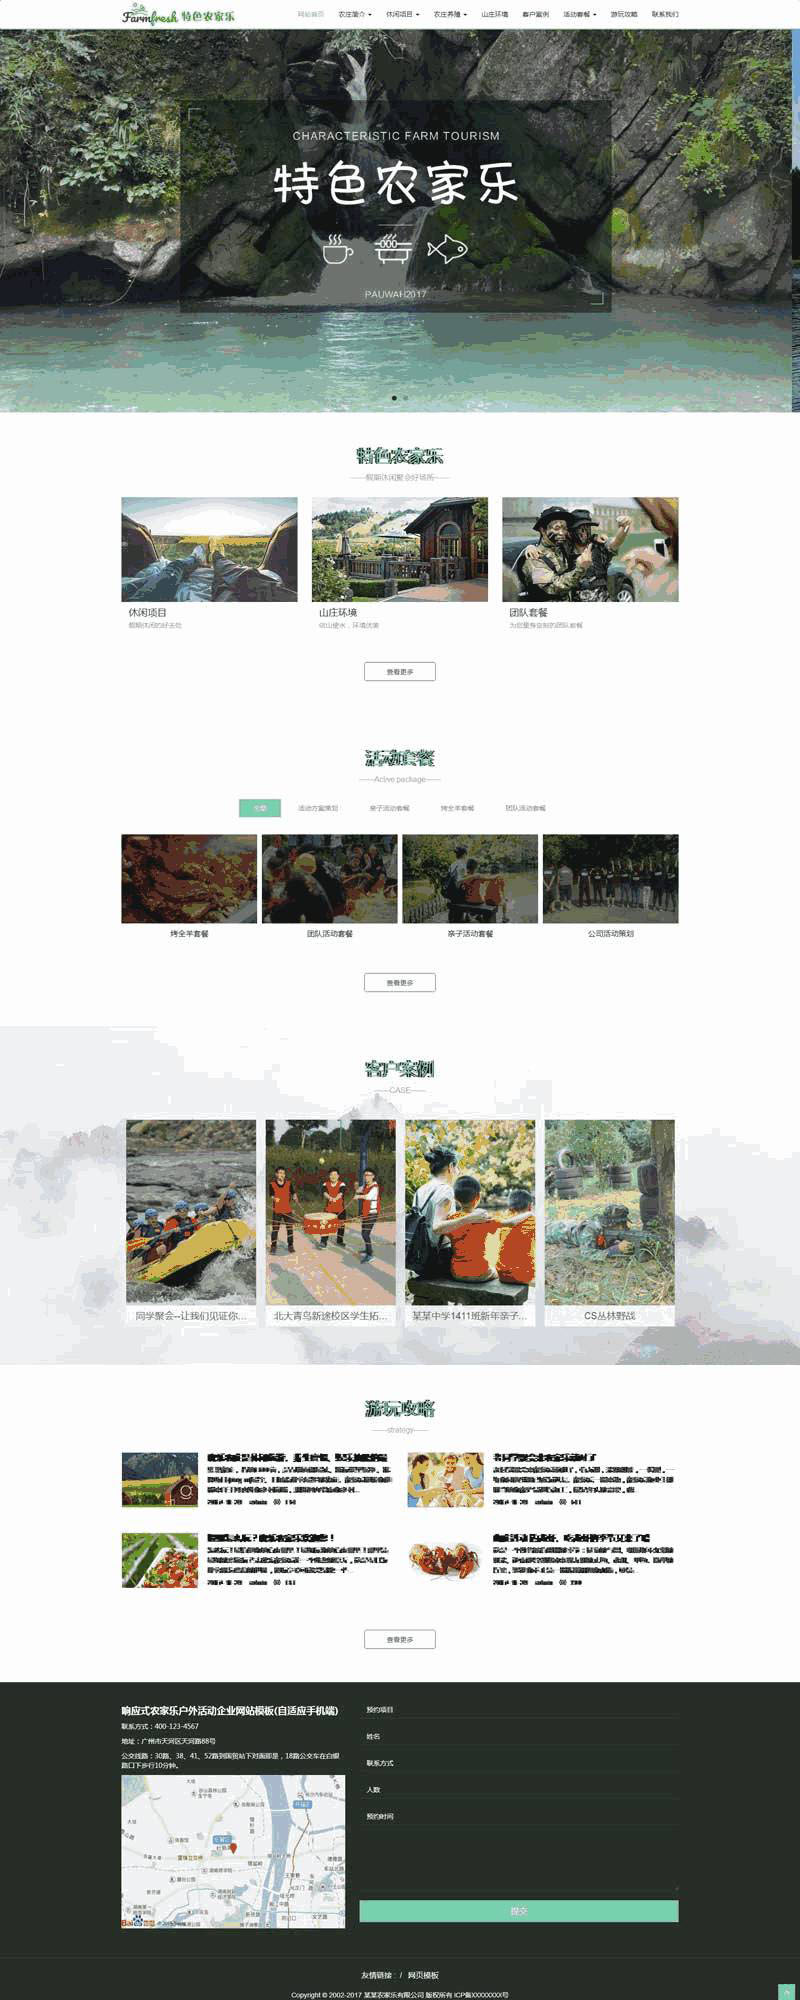 绿色宽屏农庄旅游休闲手机网站主题模板下载演示图